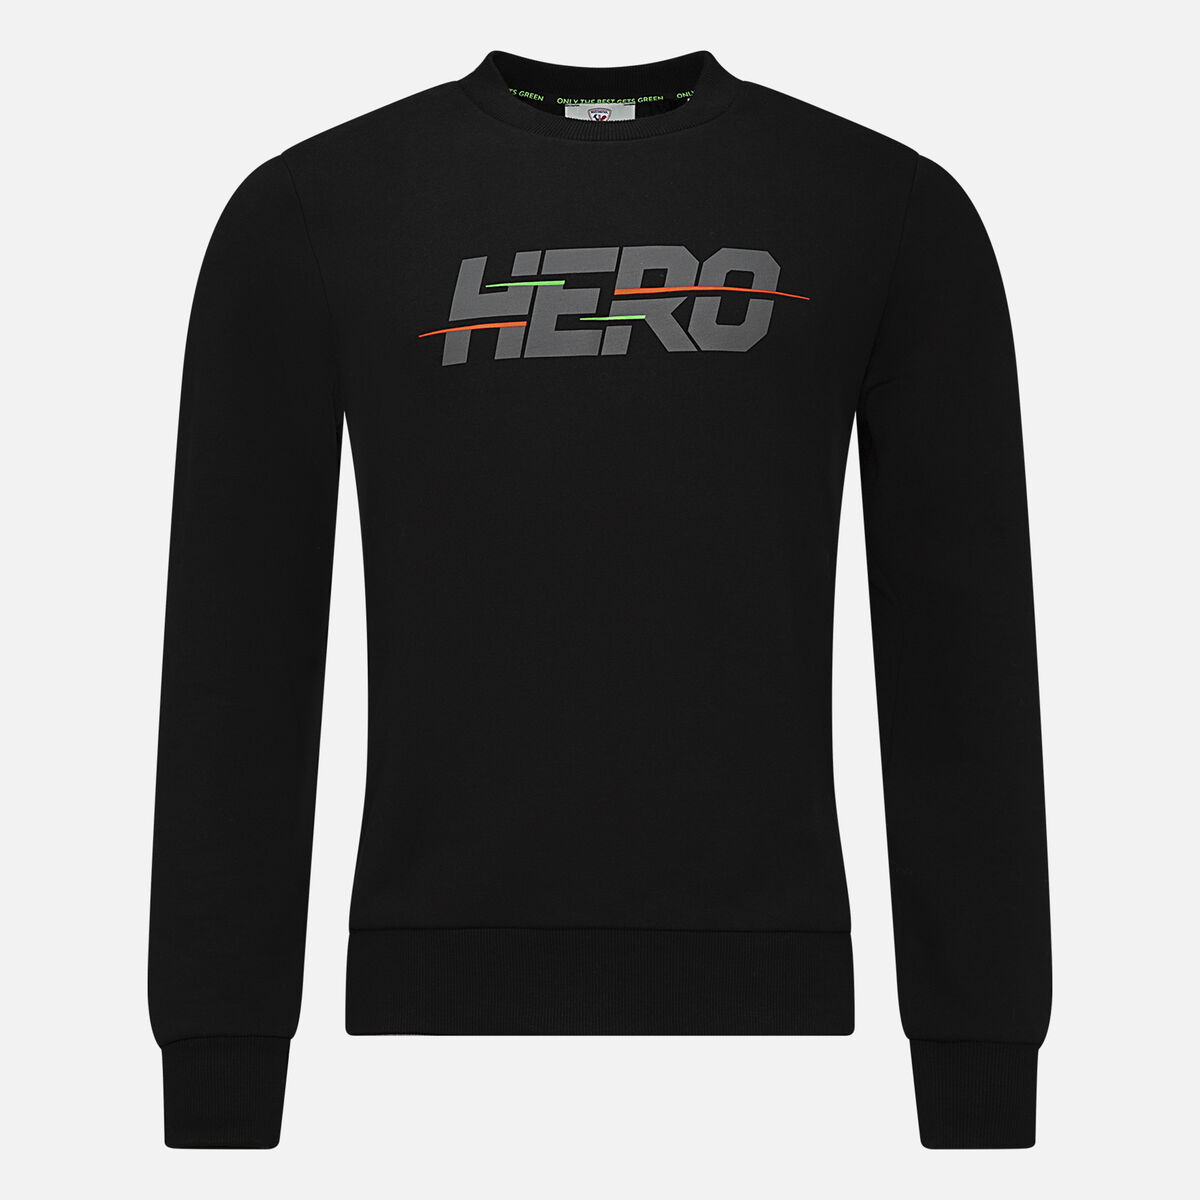 Rossignol Men's Hero Sweatshirt Black